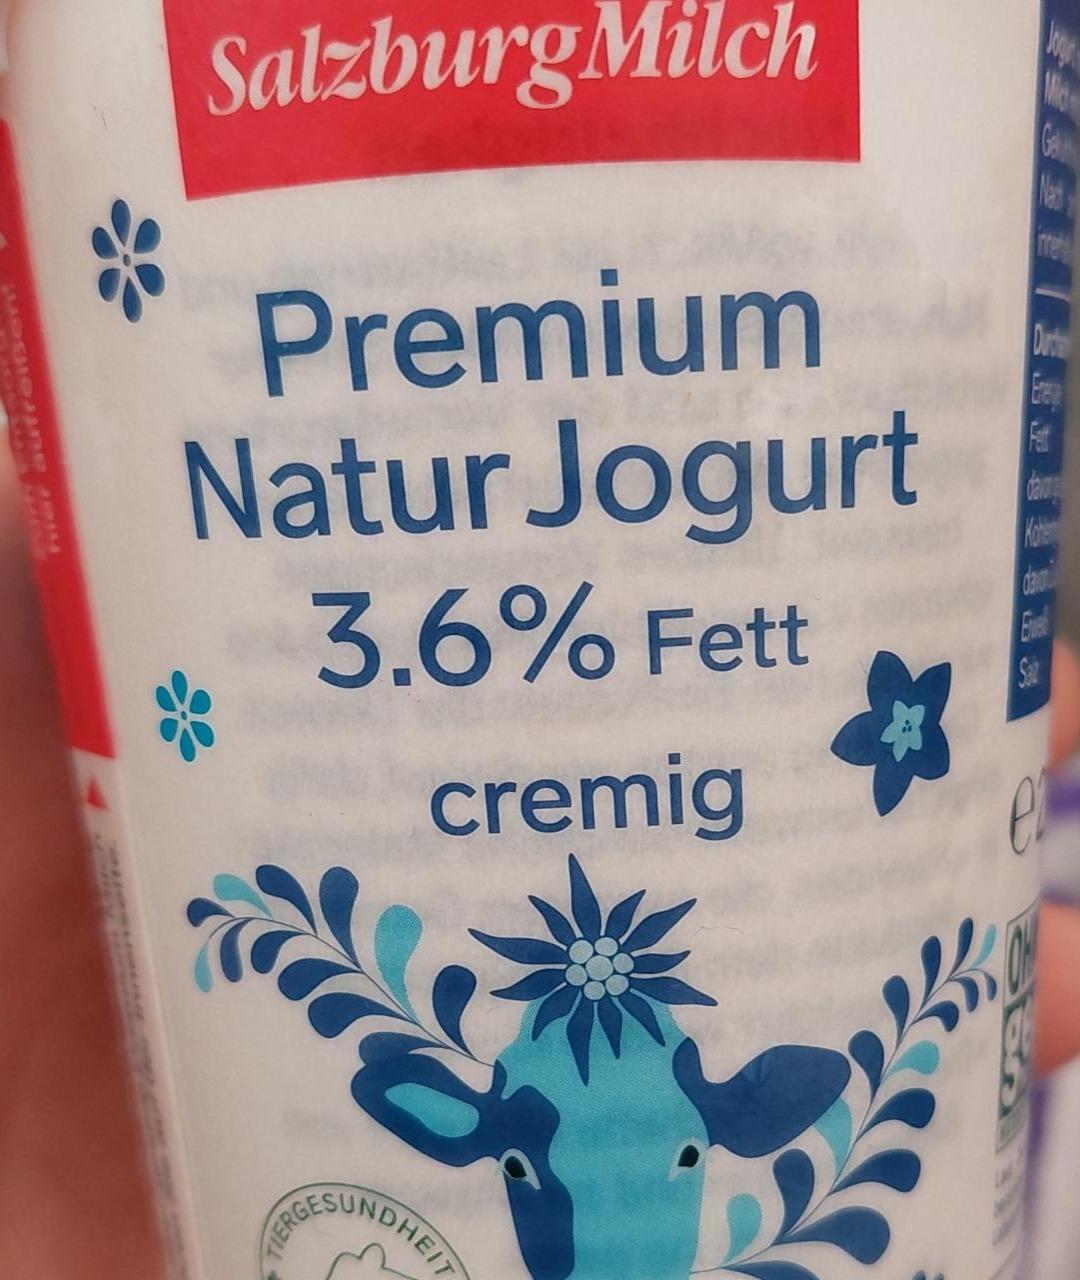 Fotografie - Premium Natur Jogurt 3,6% cremig SalzburgMilch